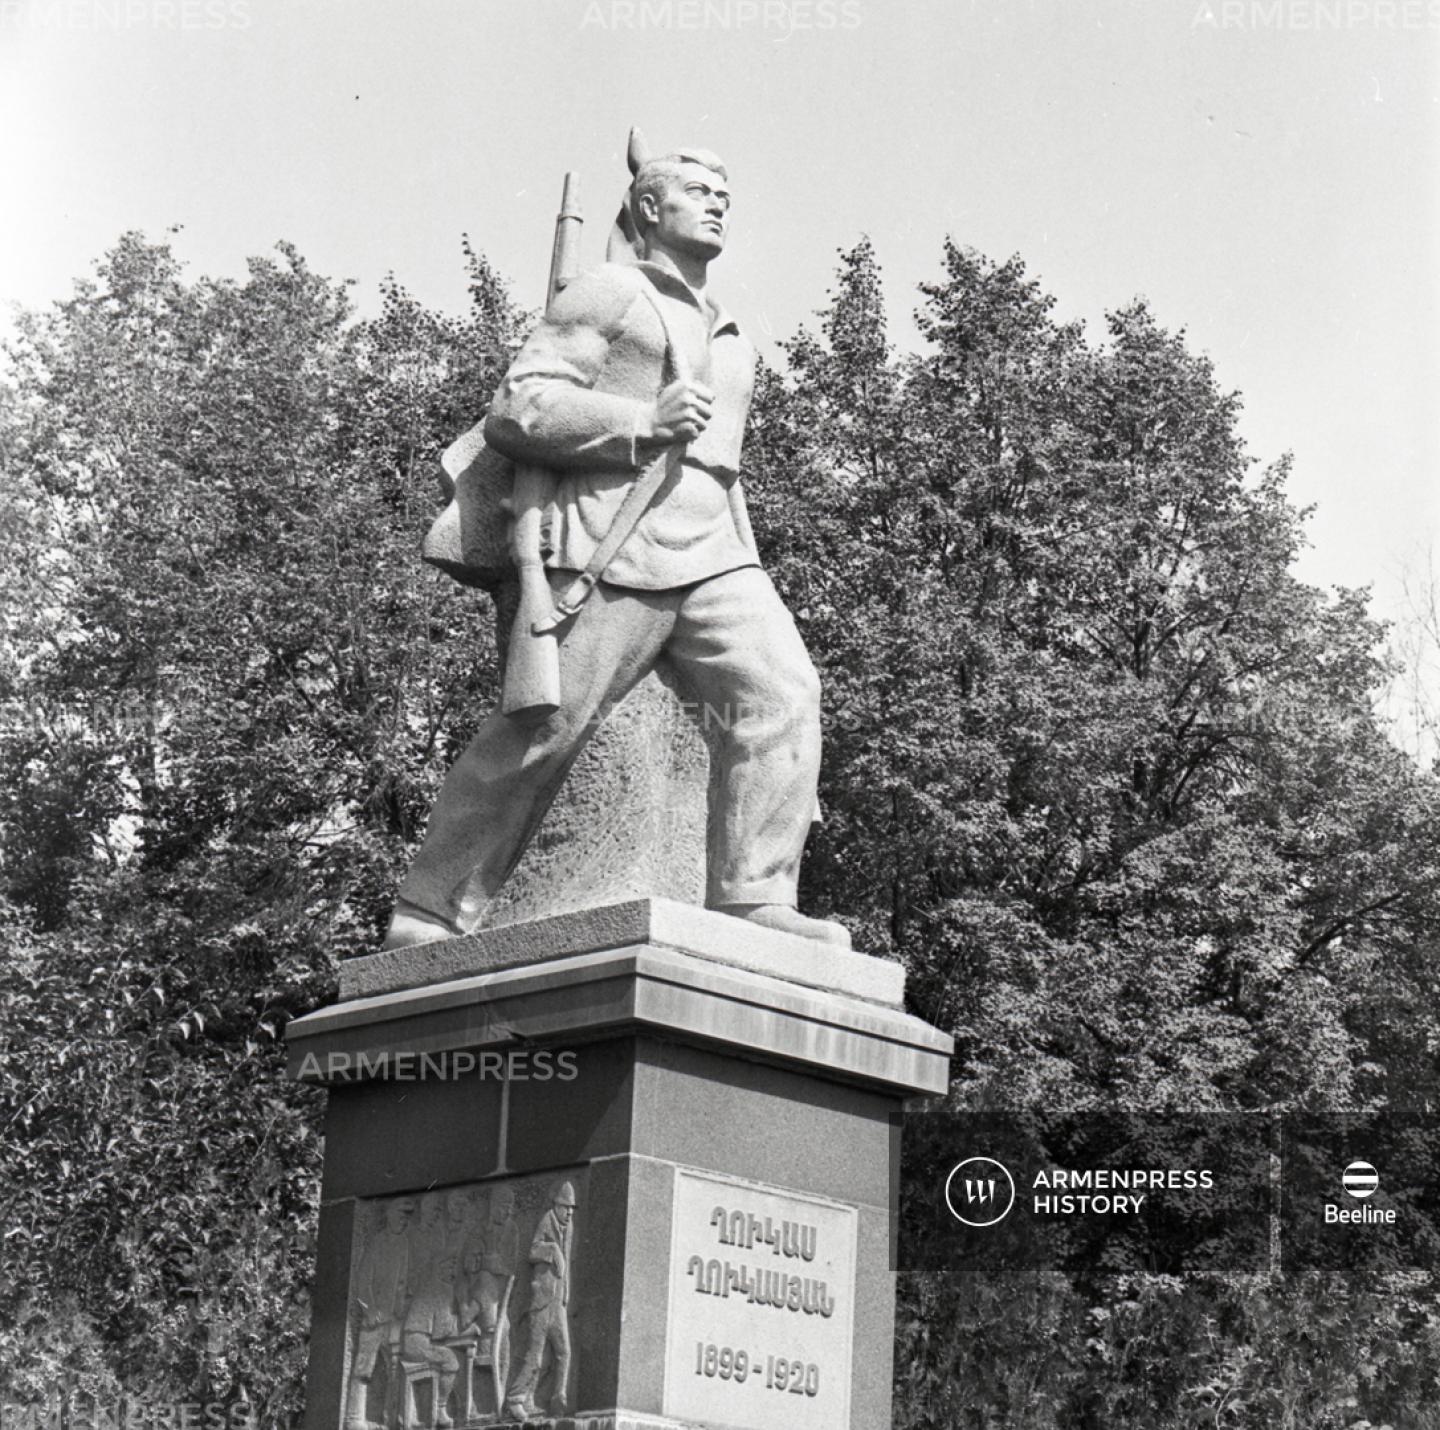 Ղուկաս Ղուկասյանի հուշարձանը Երևանում